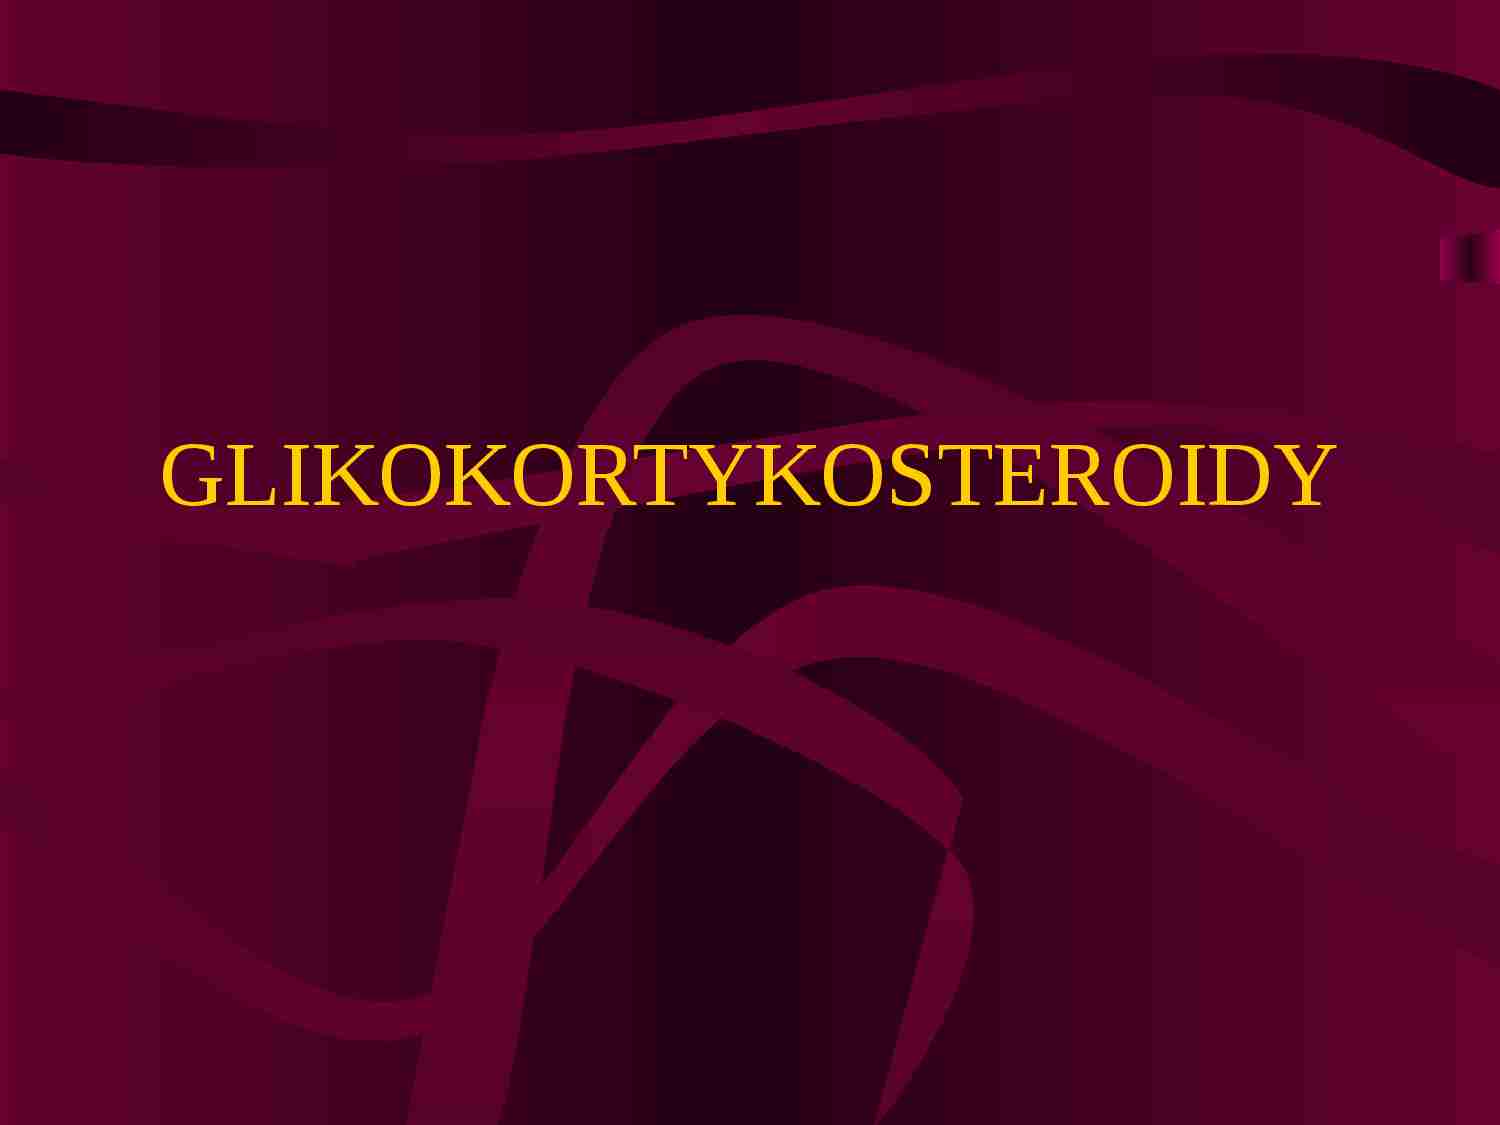 Glikokortykosteroidy-prezentacja - strona 1